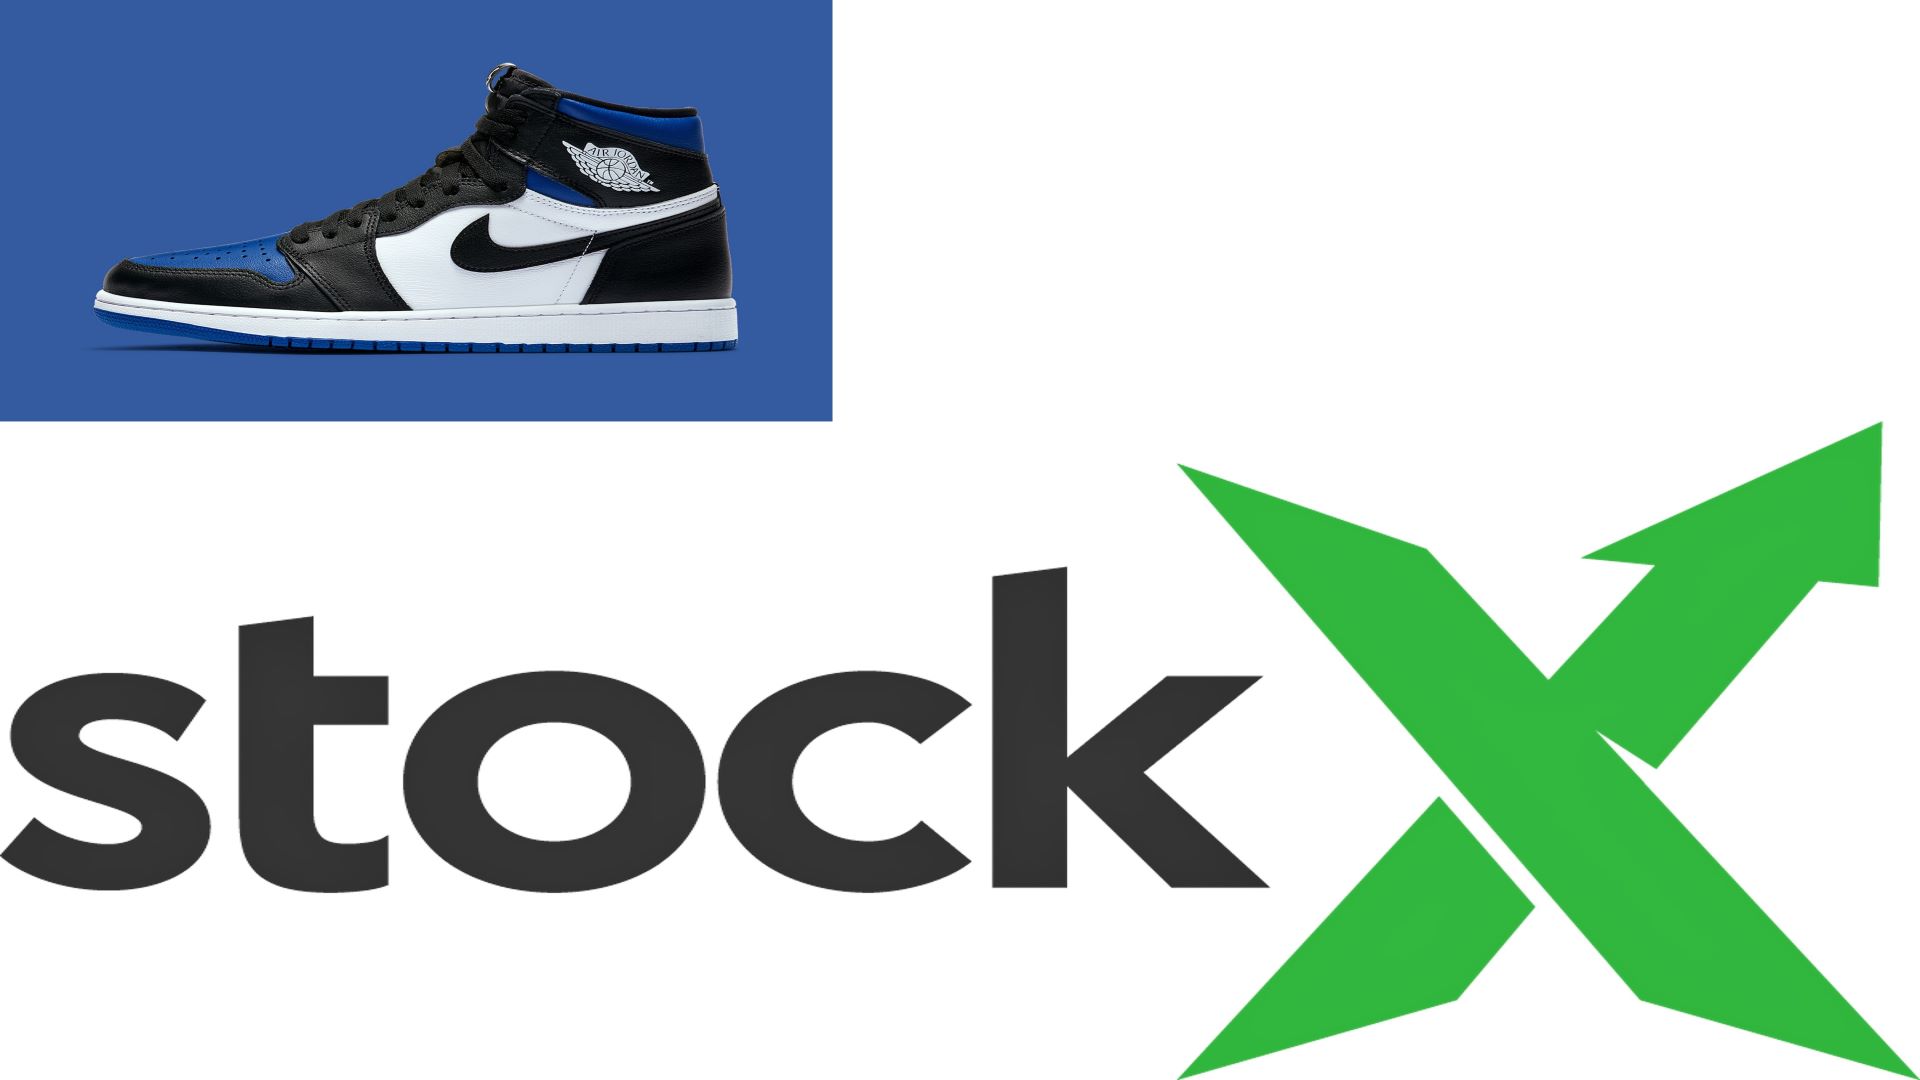 scarpa nike e logo stockx su sfondo bianco